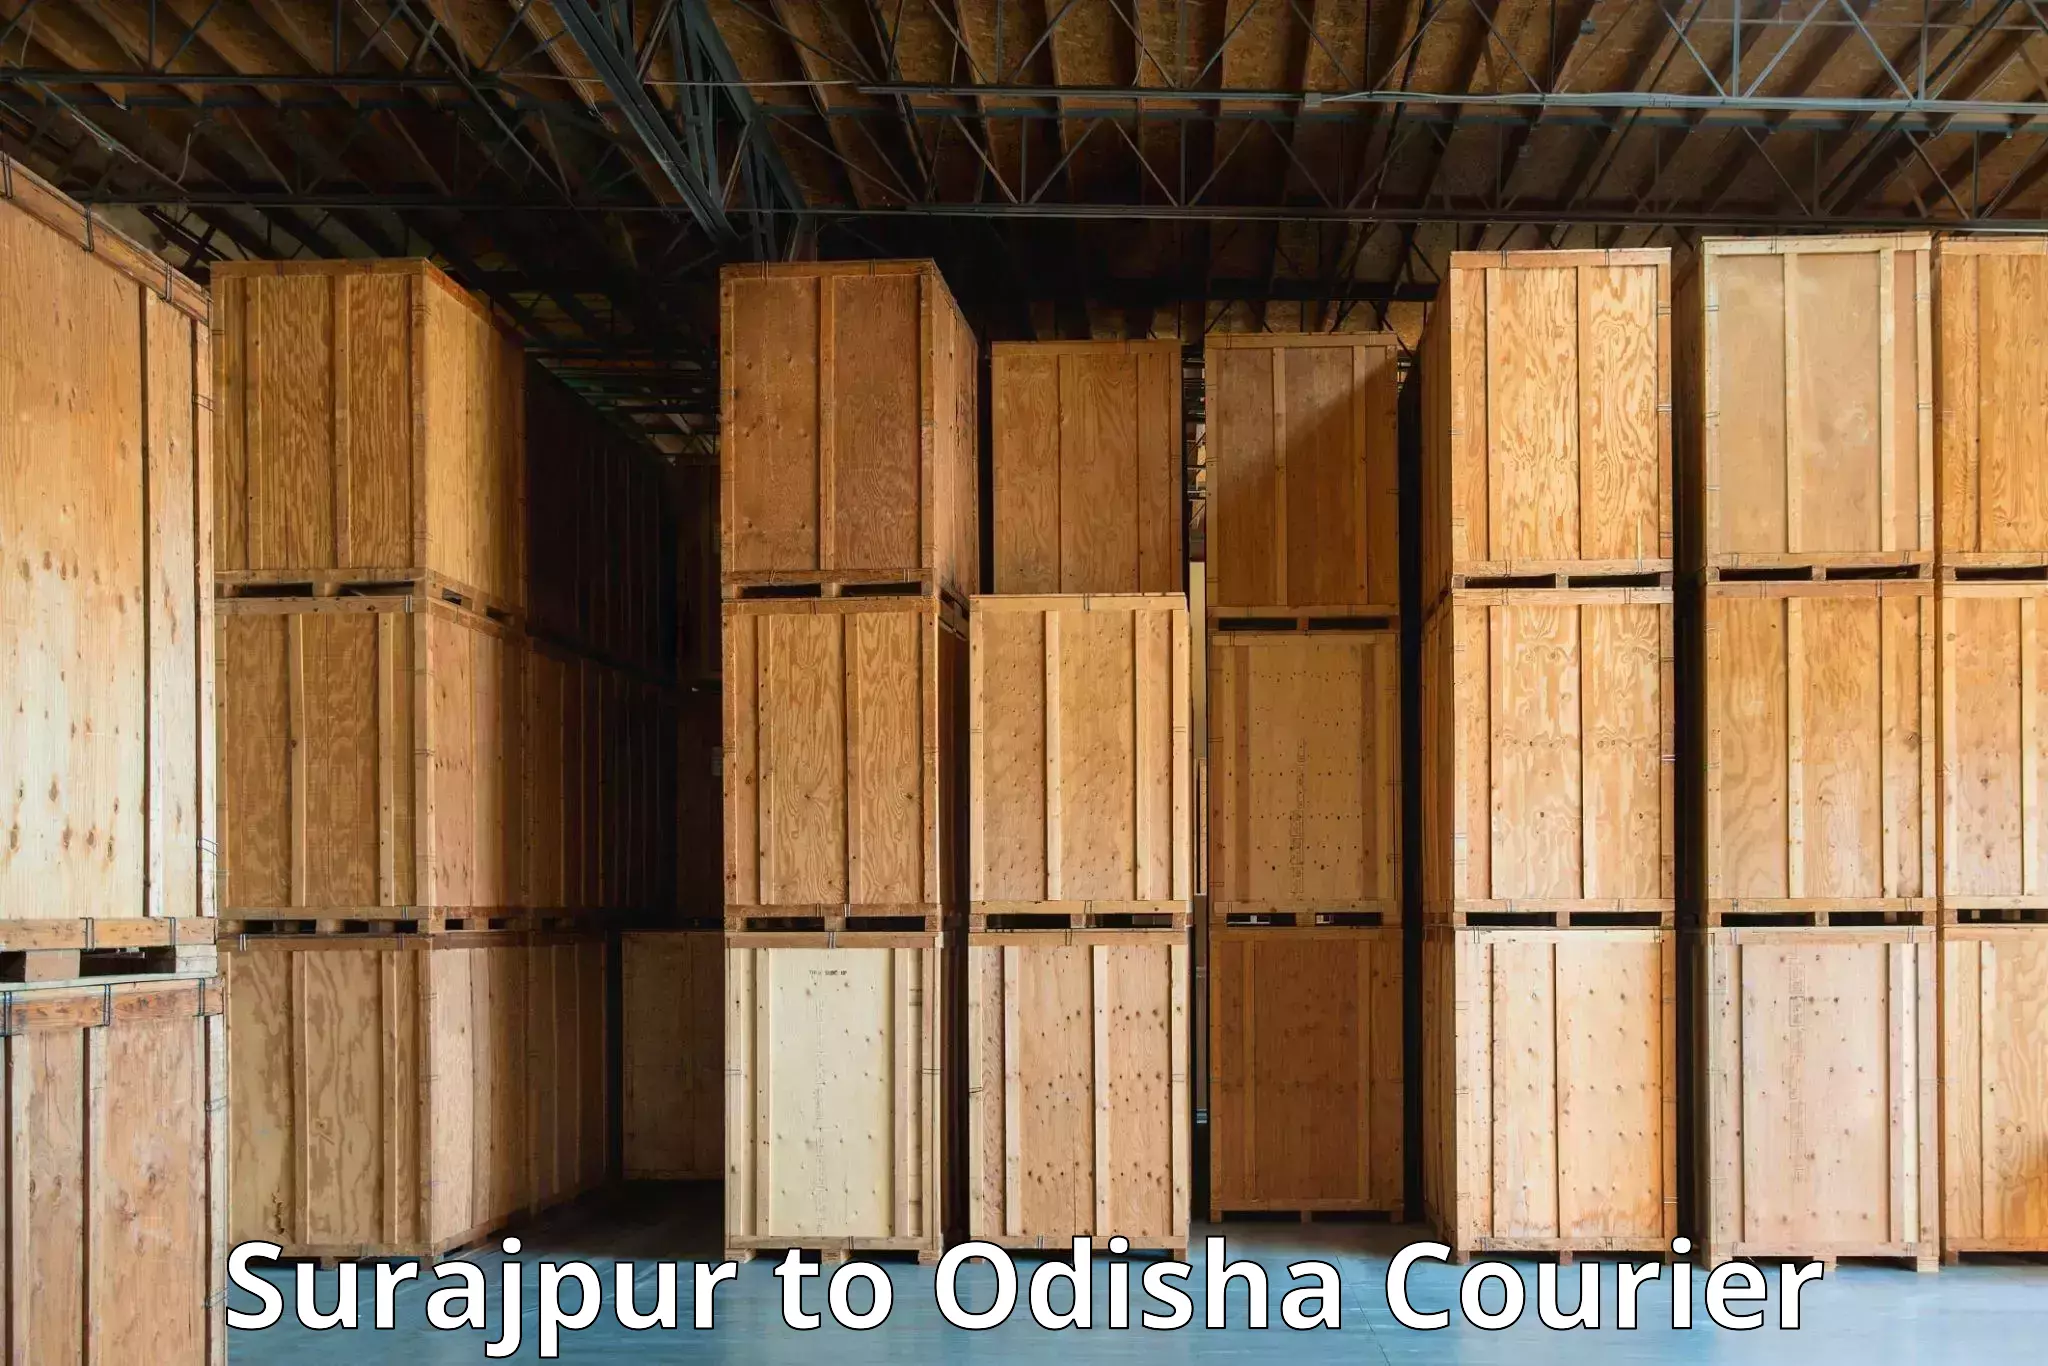 Customer-focused courier Surajpur to Kodala